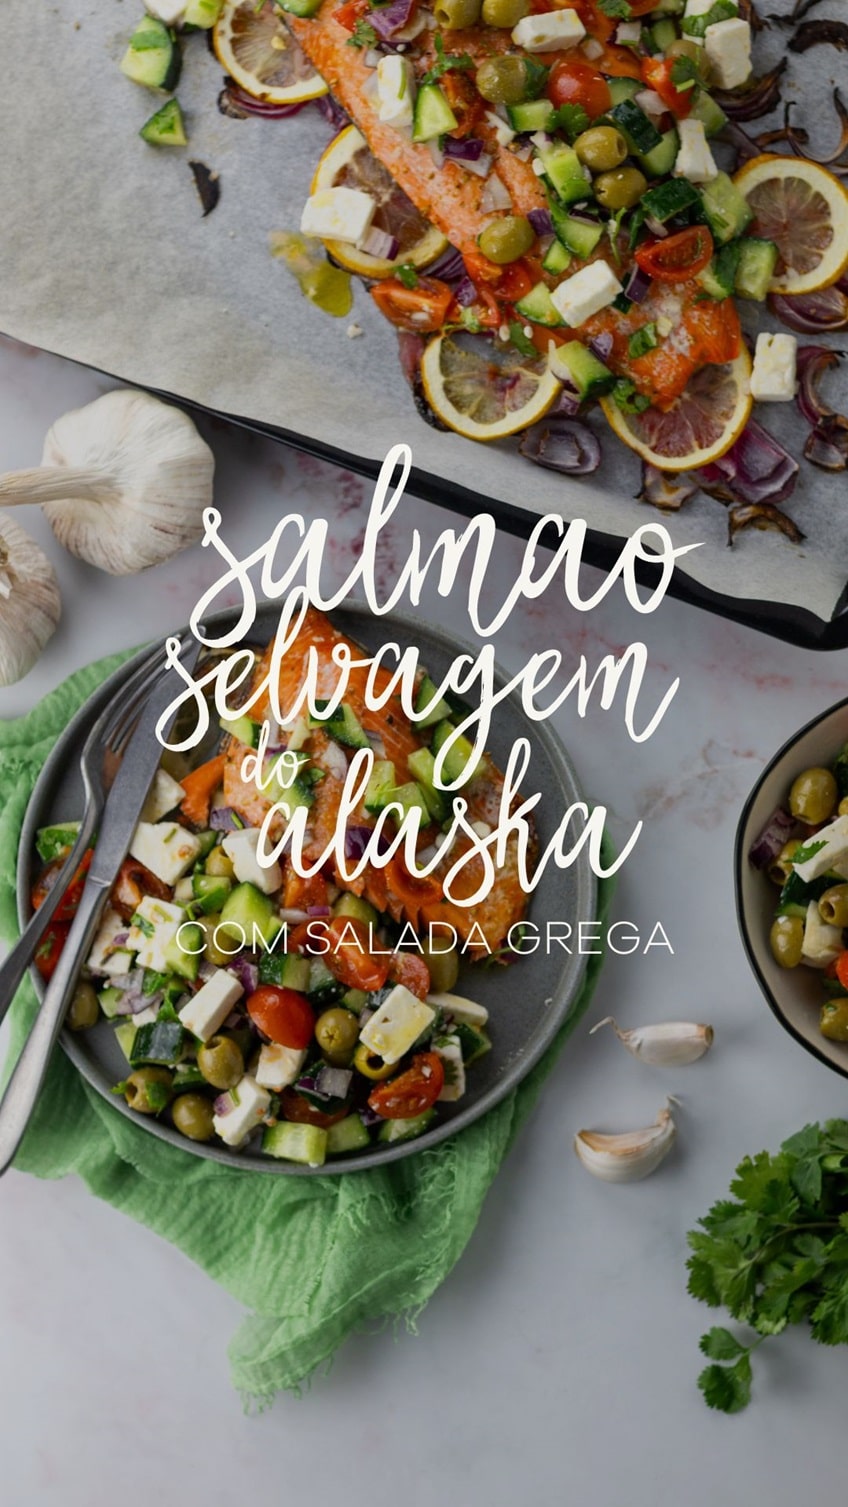 Salmão Selvagem do Alaska com Salada Grega